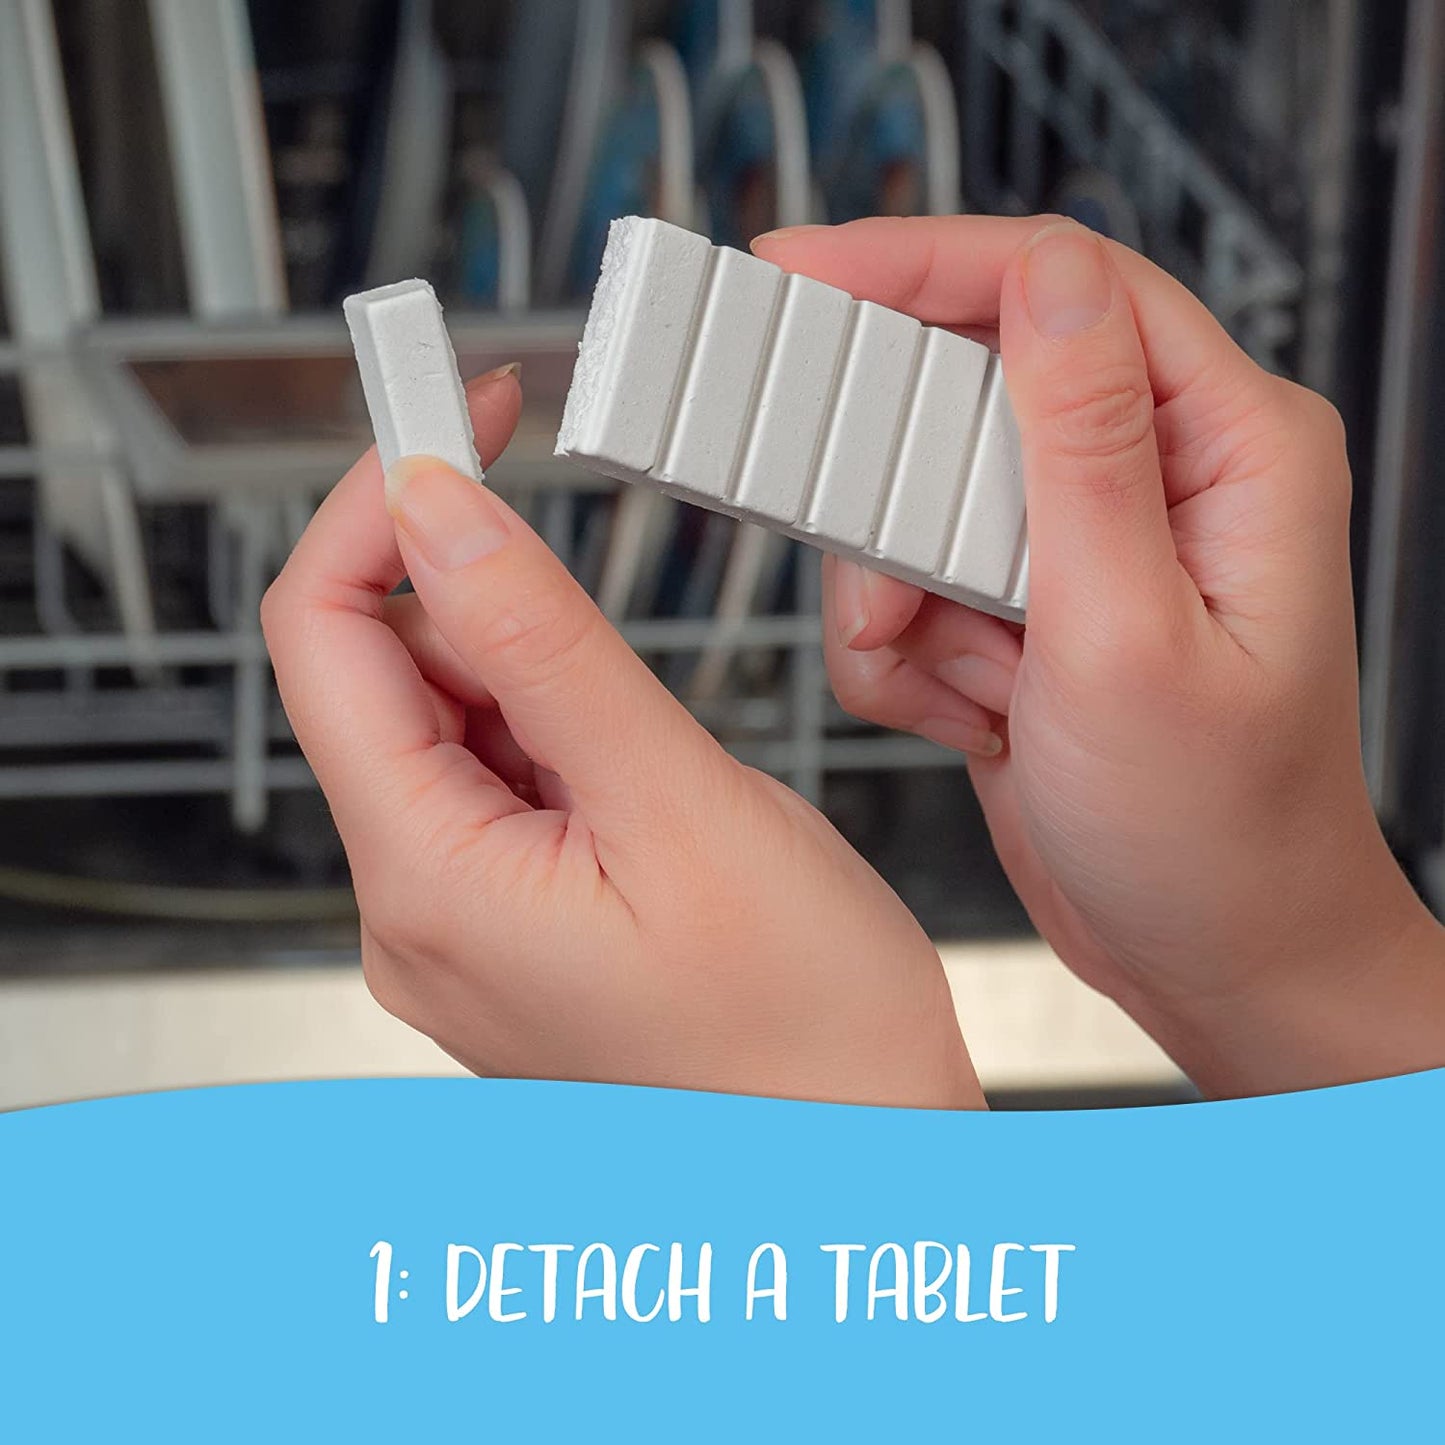 Tru Earth Dishwasher Detergent Tablets - Step 1: Detach a tablet